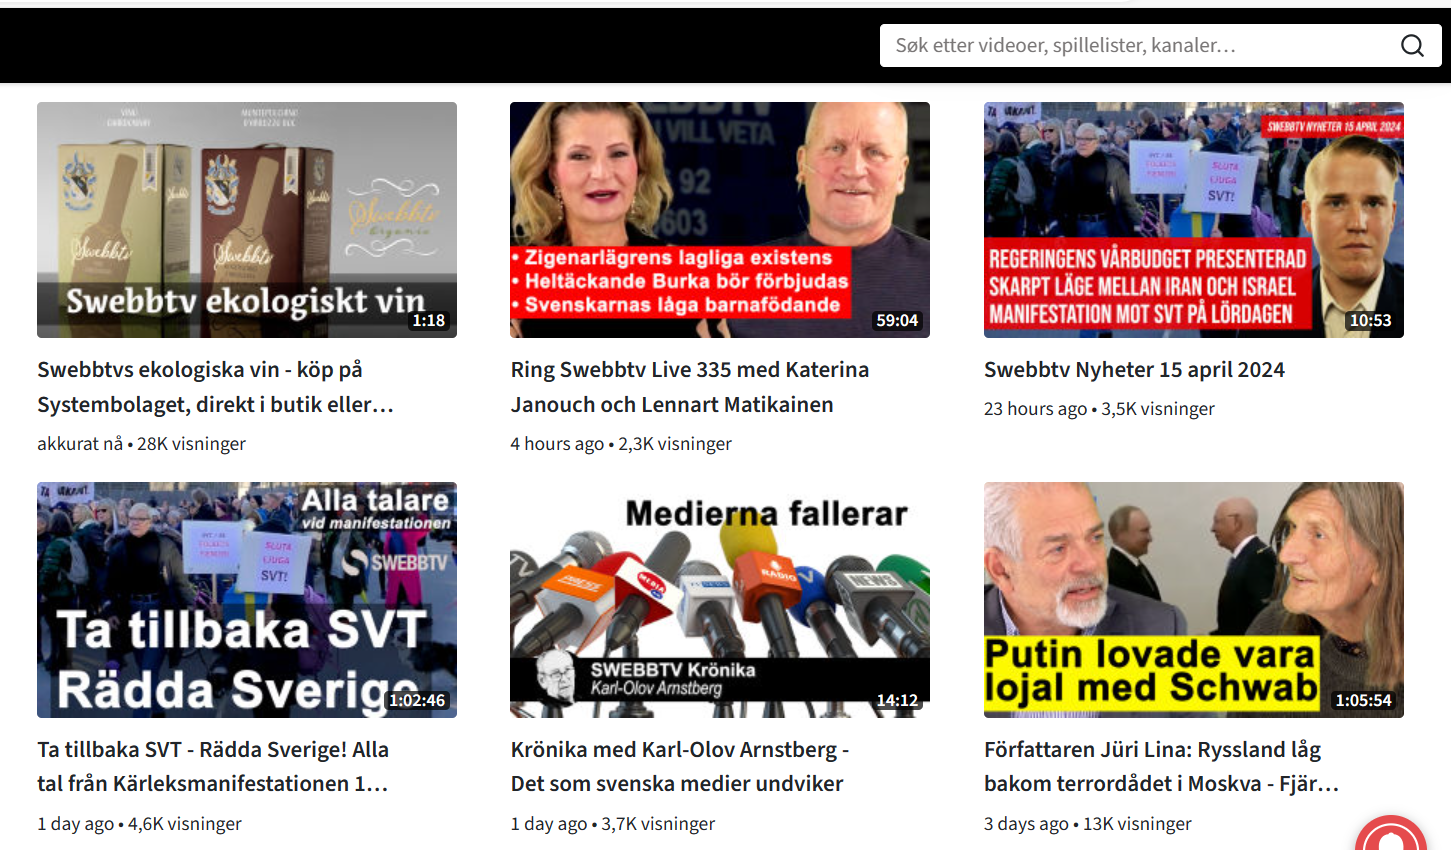 SWEBB TV: Svensk ressurs